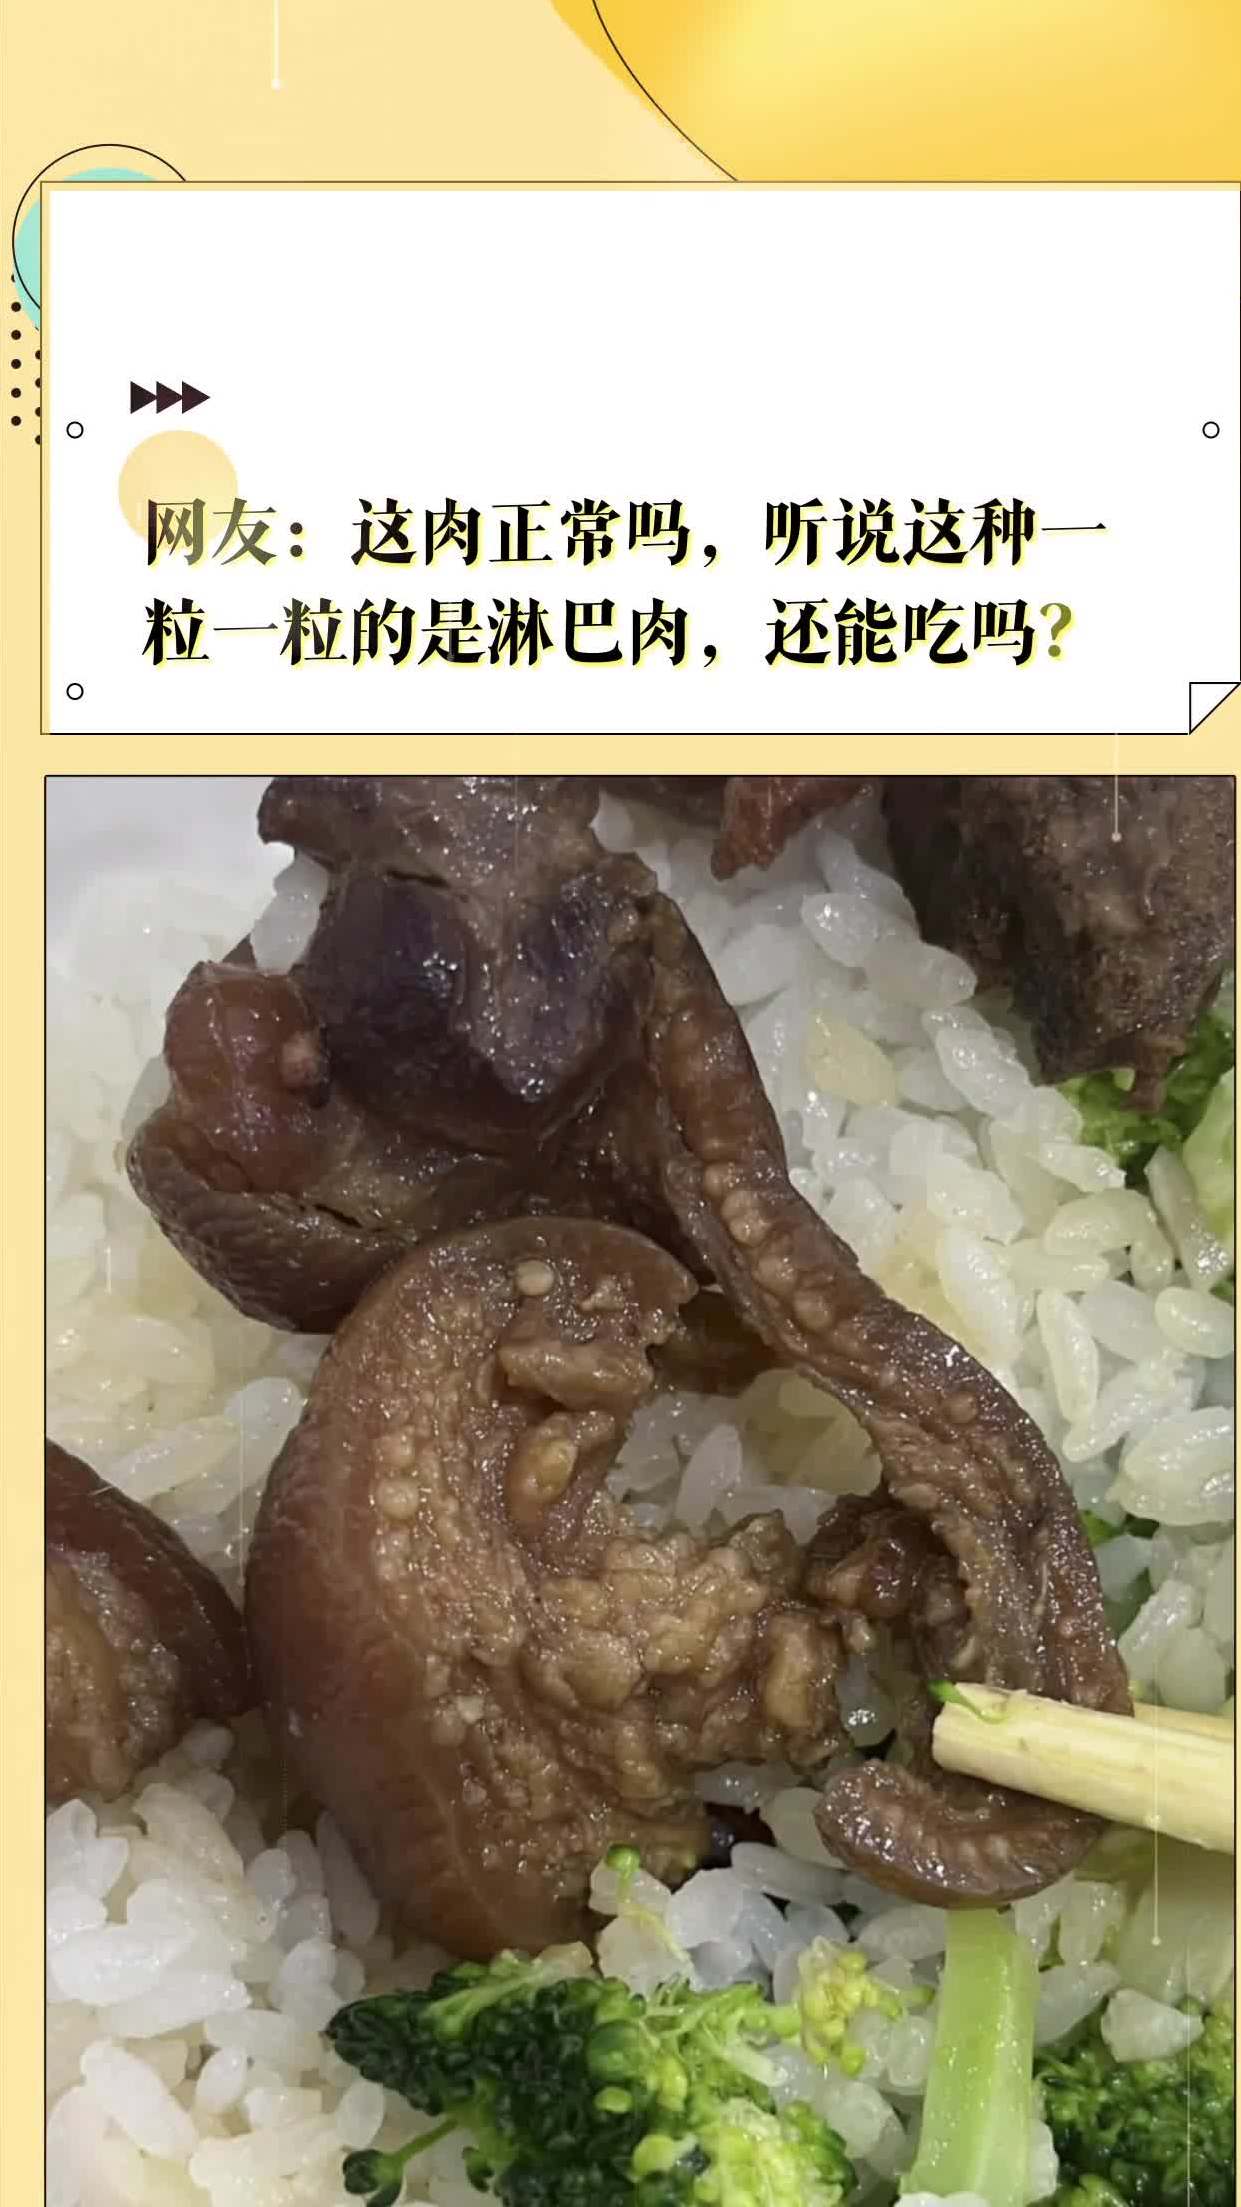 网友:这肉正常吗,听说这种一粒一粒的是淋巴肉,还能吃吗?